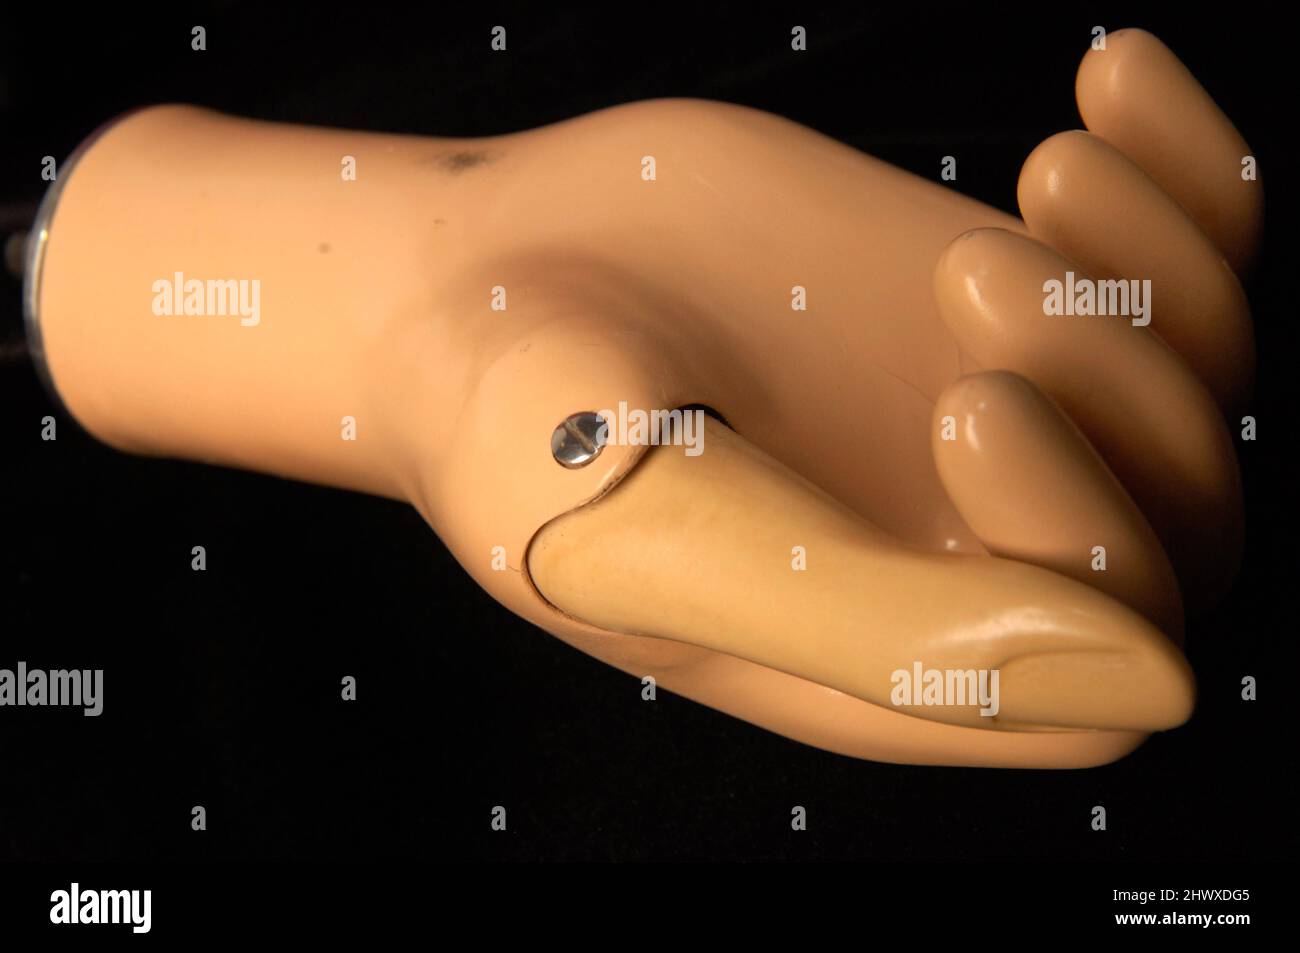 Prothetische Steeplon Hand entwickelt, um in Verbindung mit einem "Arbeits" Arm, der über herkömmliche Hosenträger, Riemenscheiben und Schnüre gesteuert wird arbeiten Stockfoto